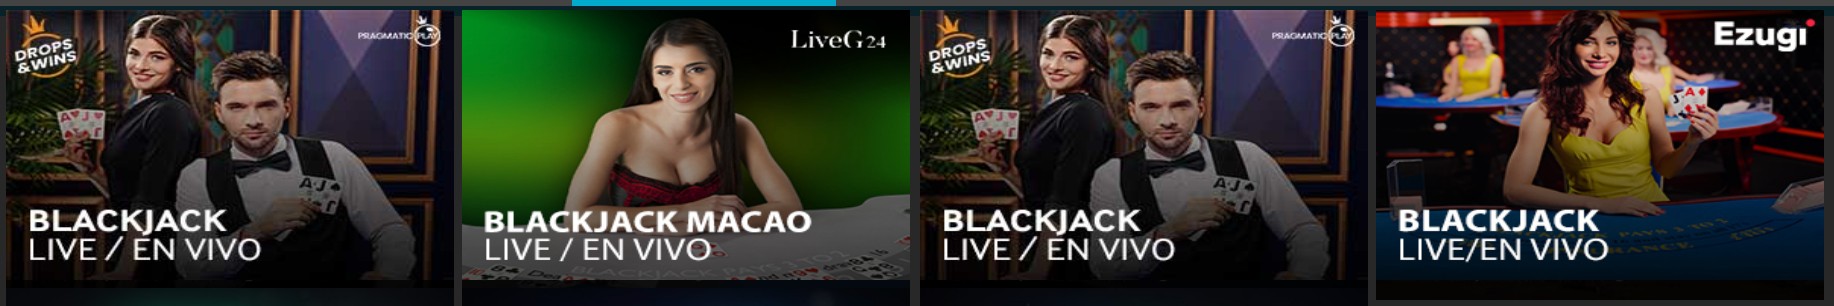 blackjack-en-vivo-betway